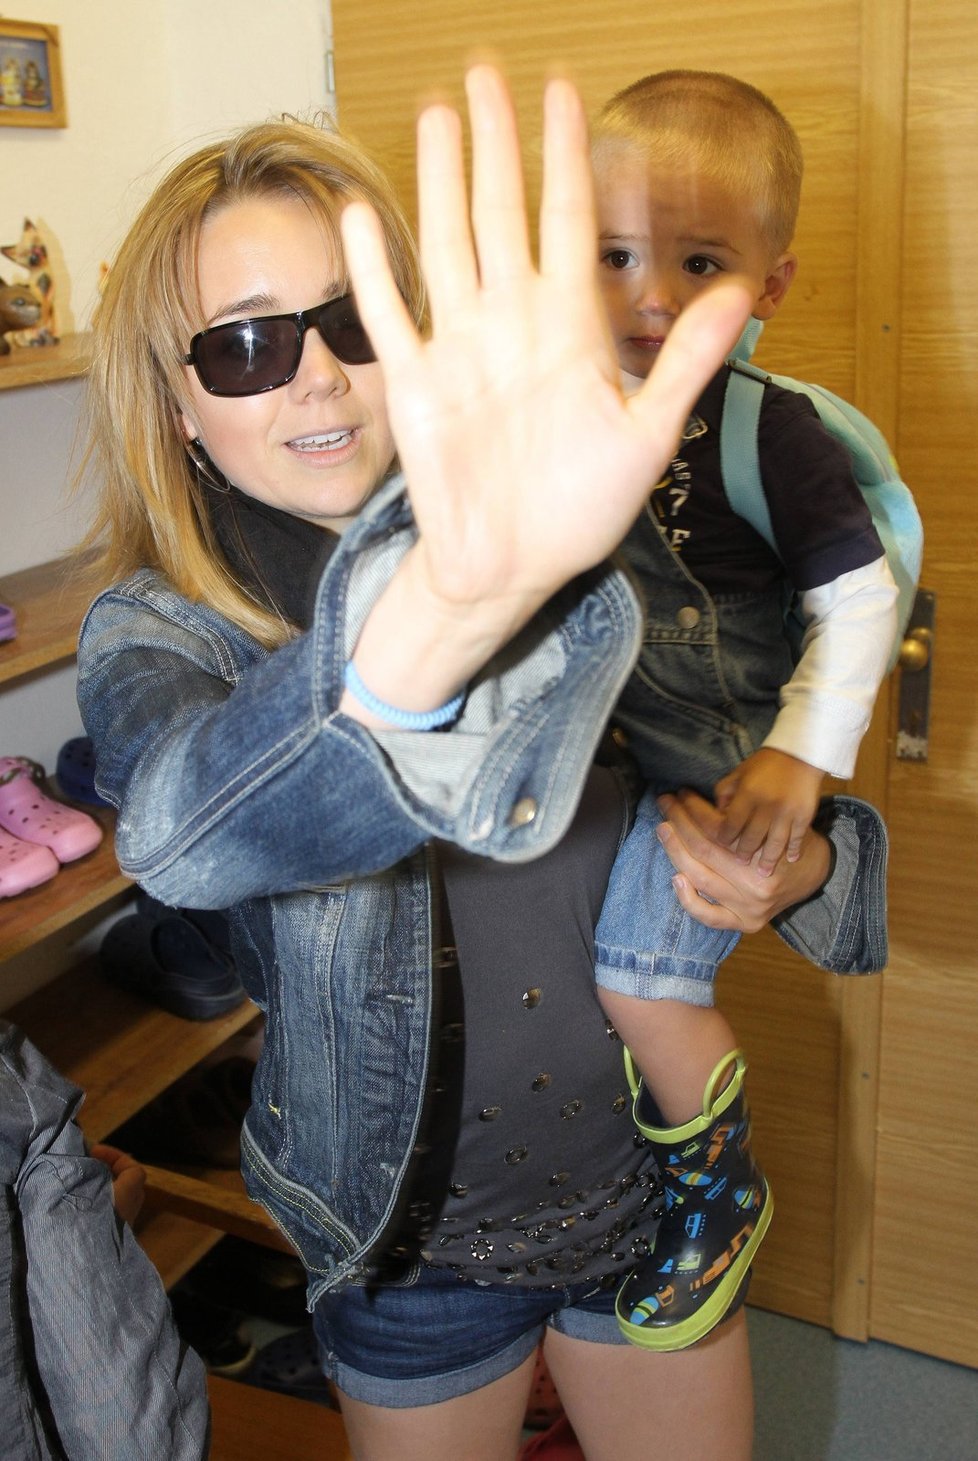 Nefoťte mého syna, zakrývala Lucie dlaní oko fotoaparátu